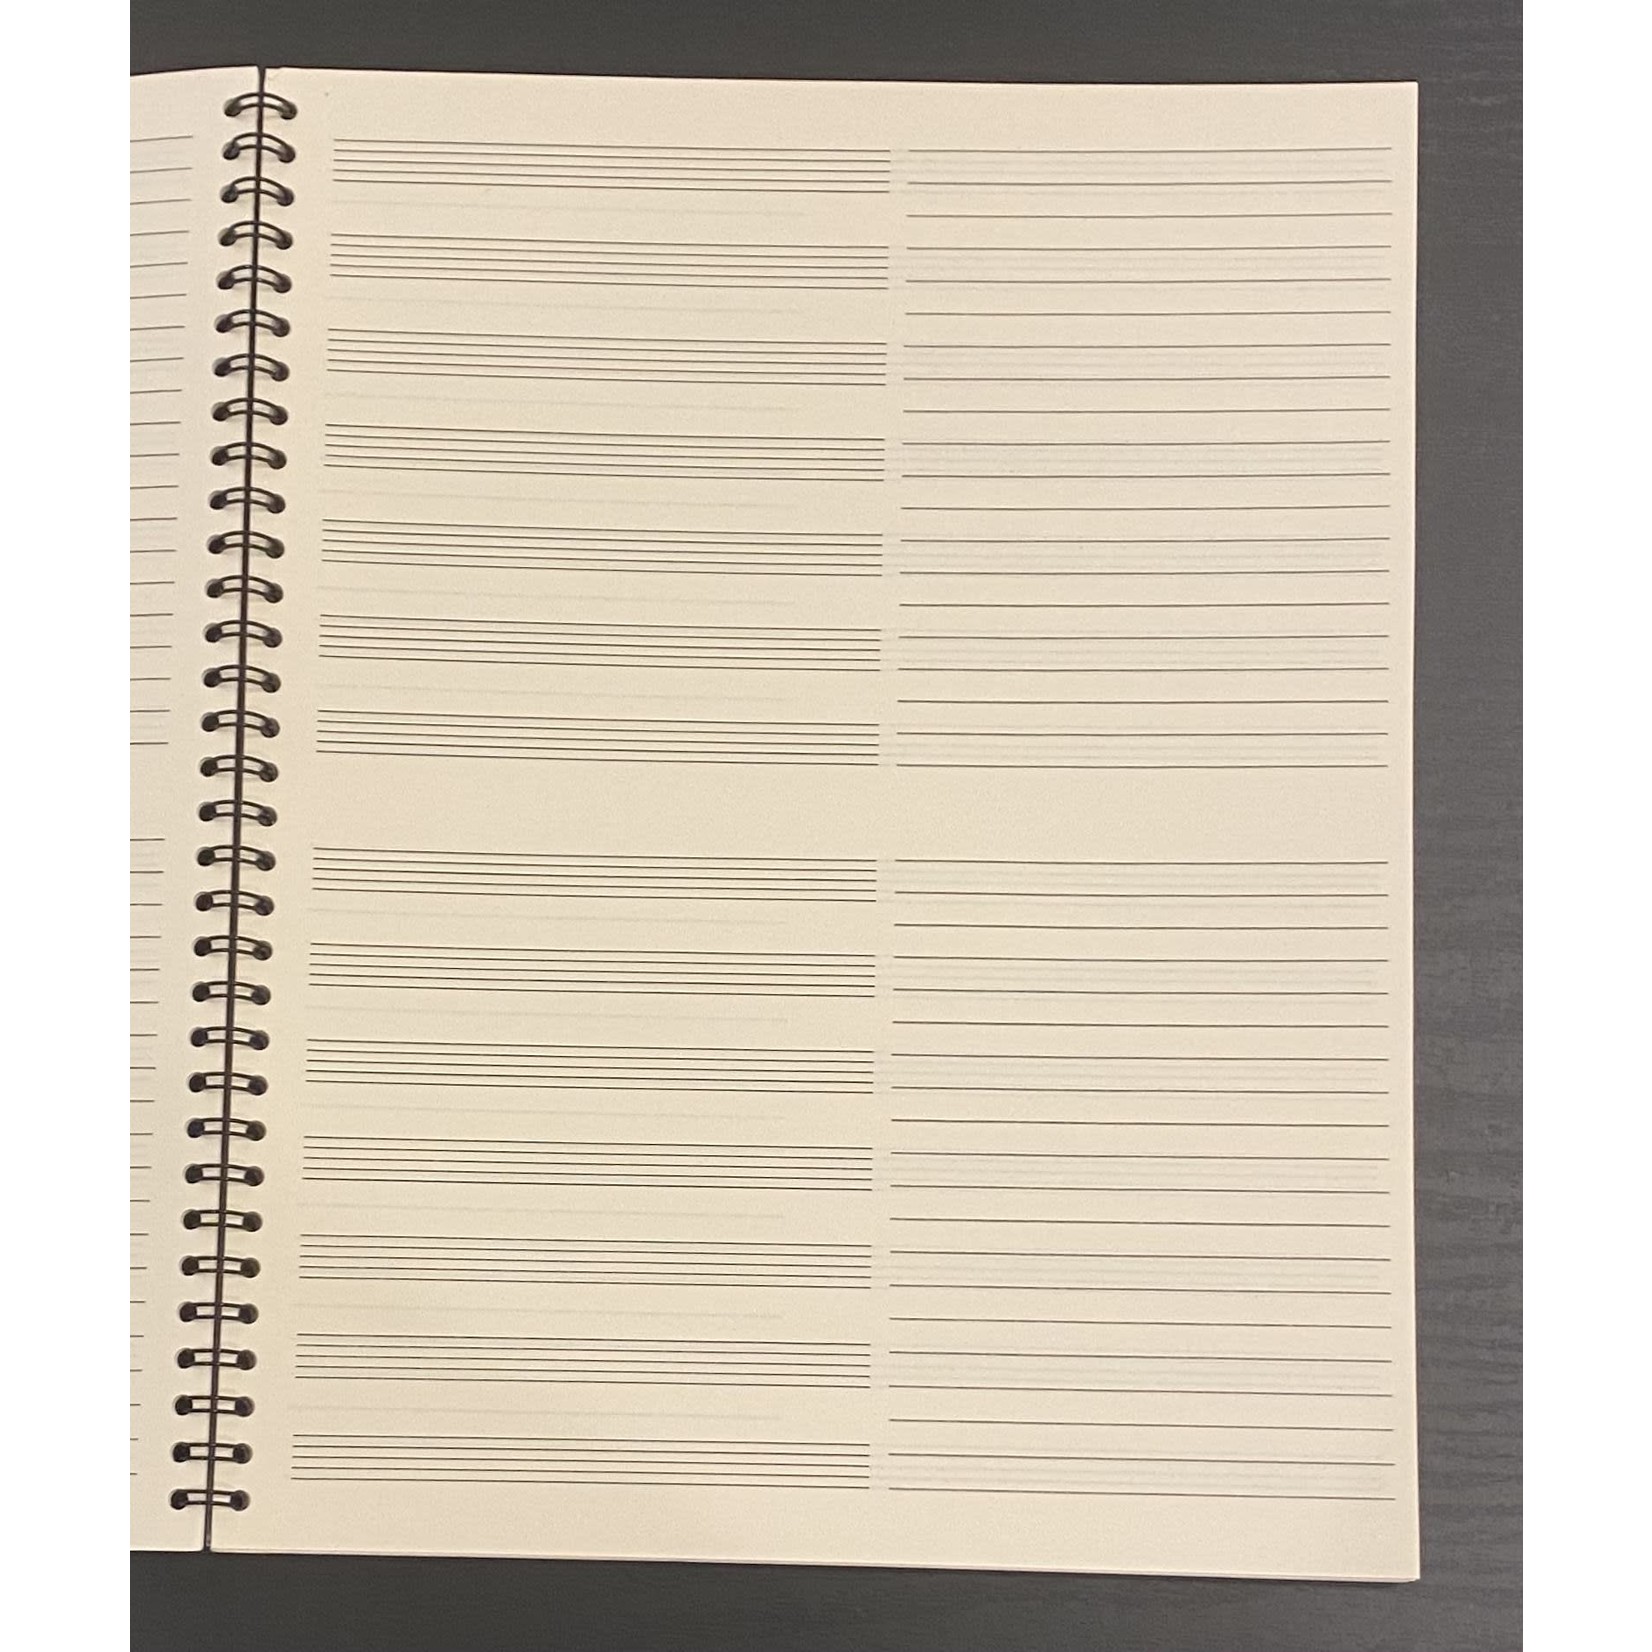 Manuscript: BBM, Spiral Notebook, 14st/64pg (8.5"x11")